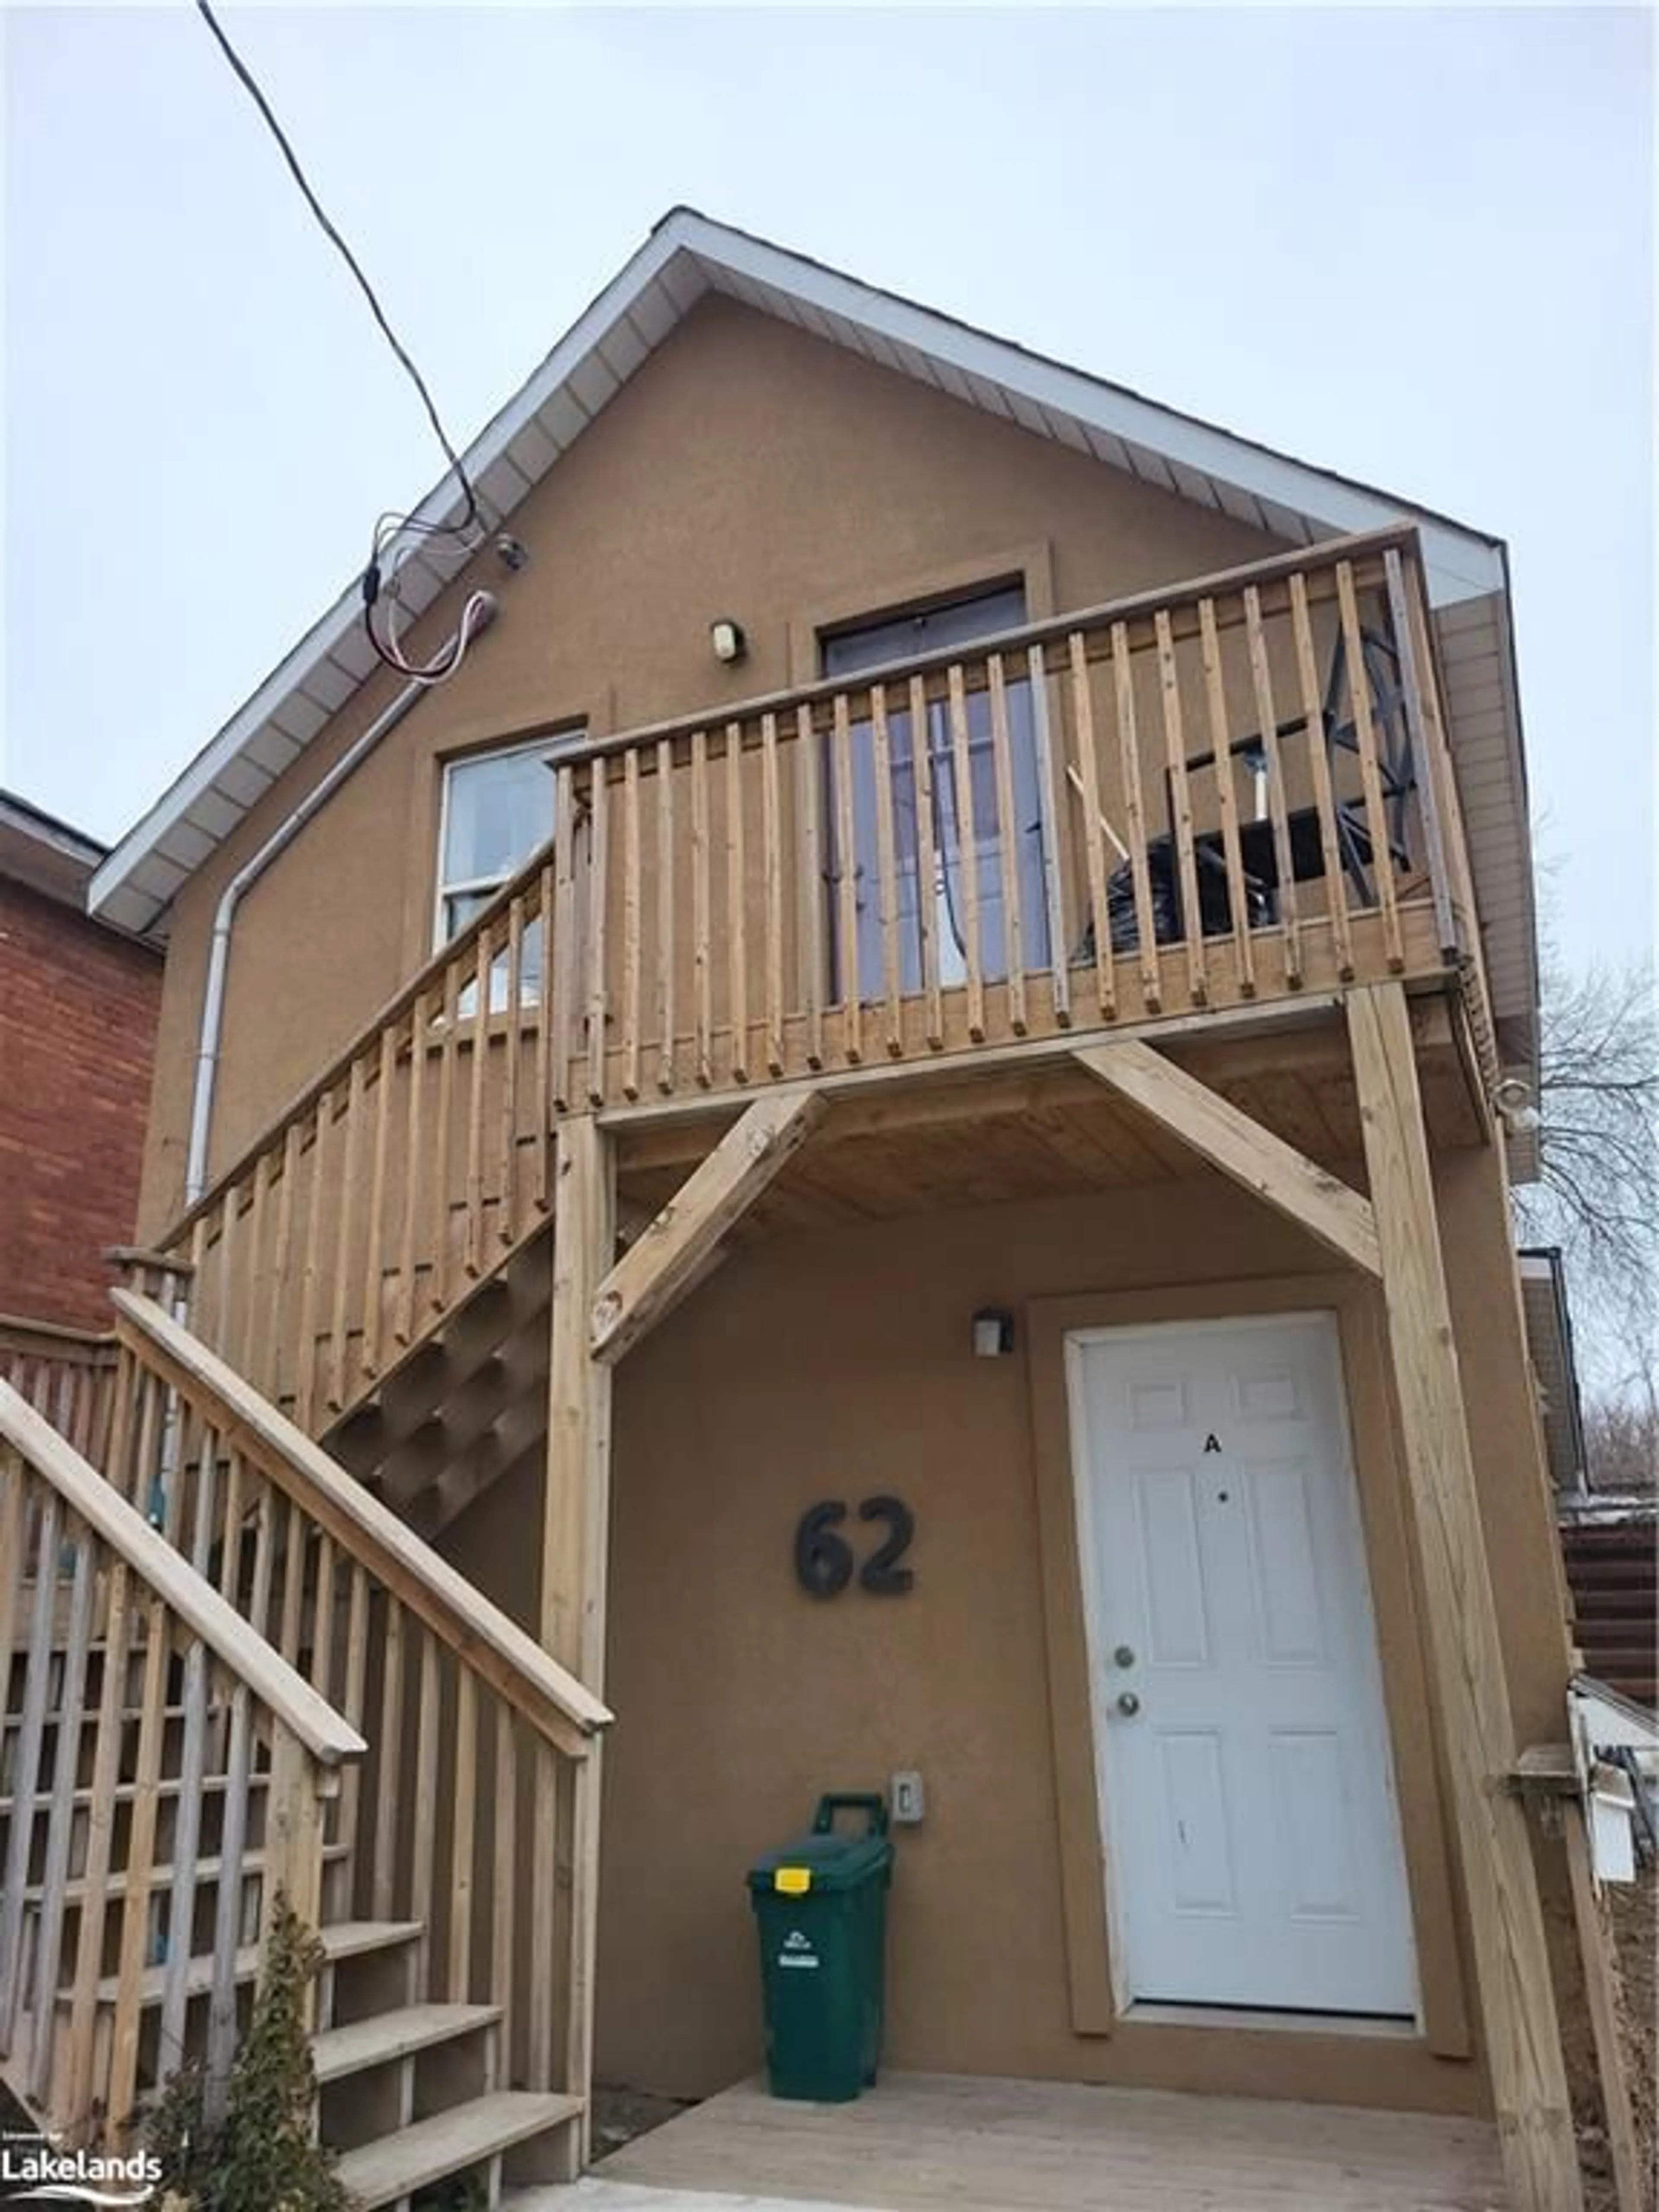 Frontside or backside of a home for 62 West St, Orillia Ontario L3V 5G4